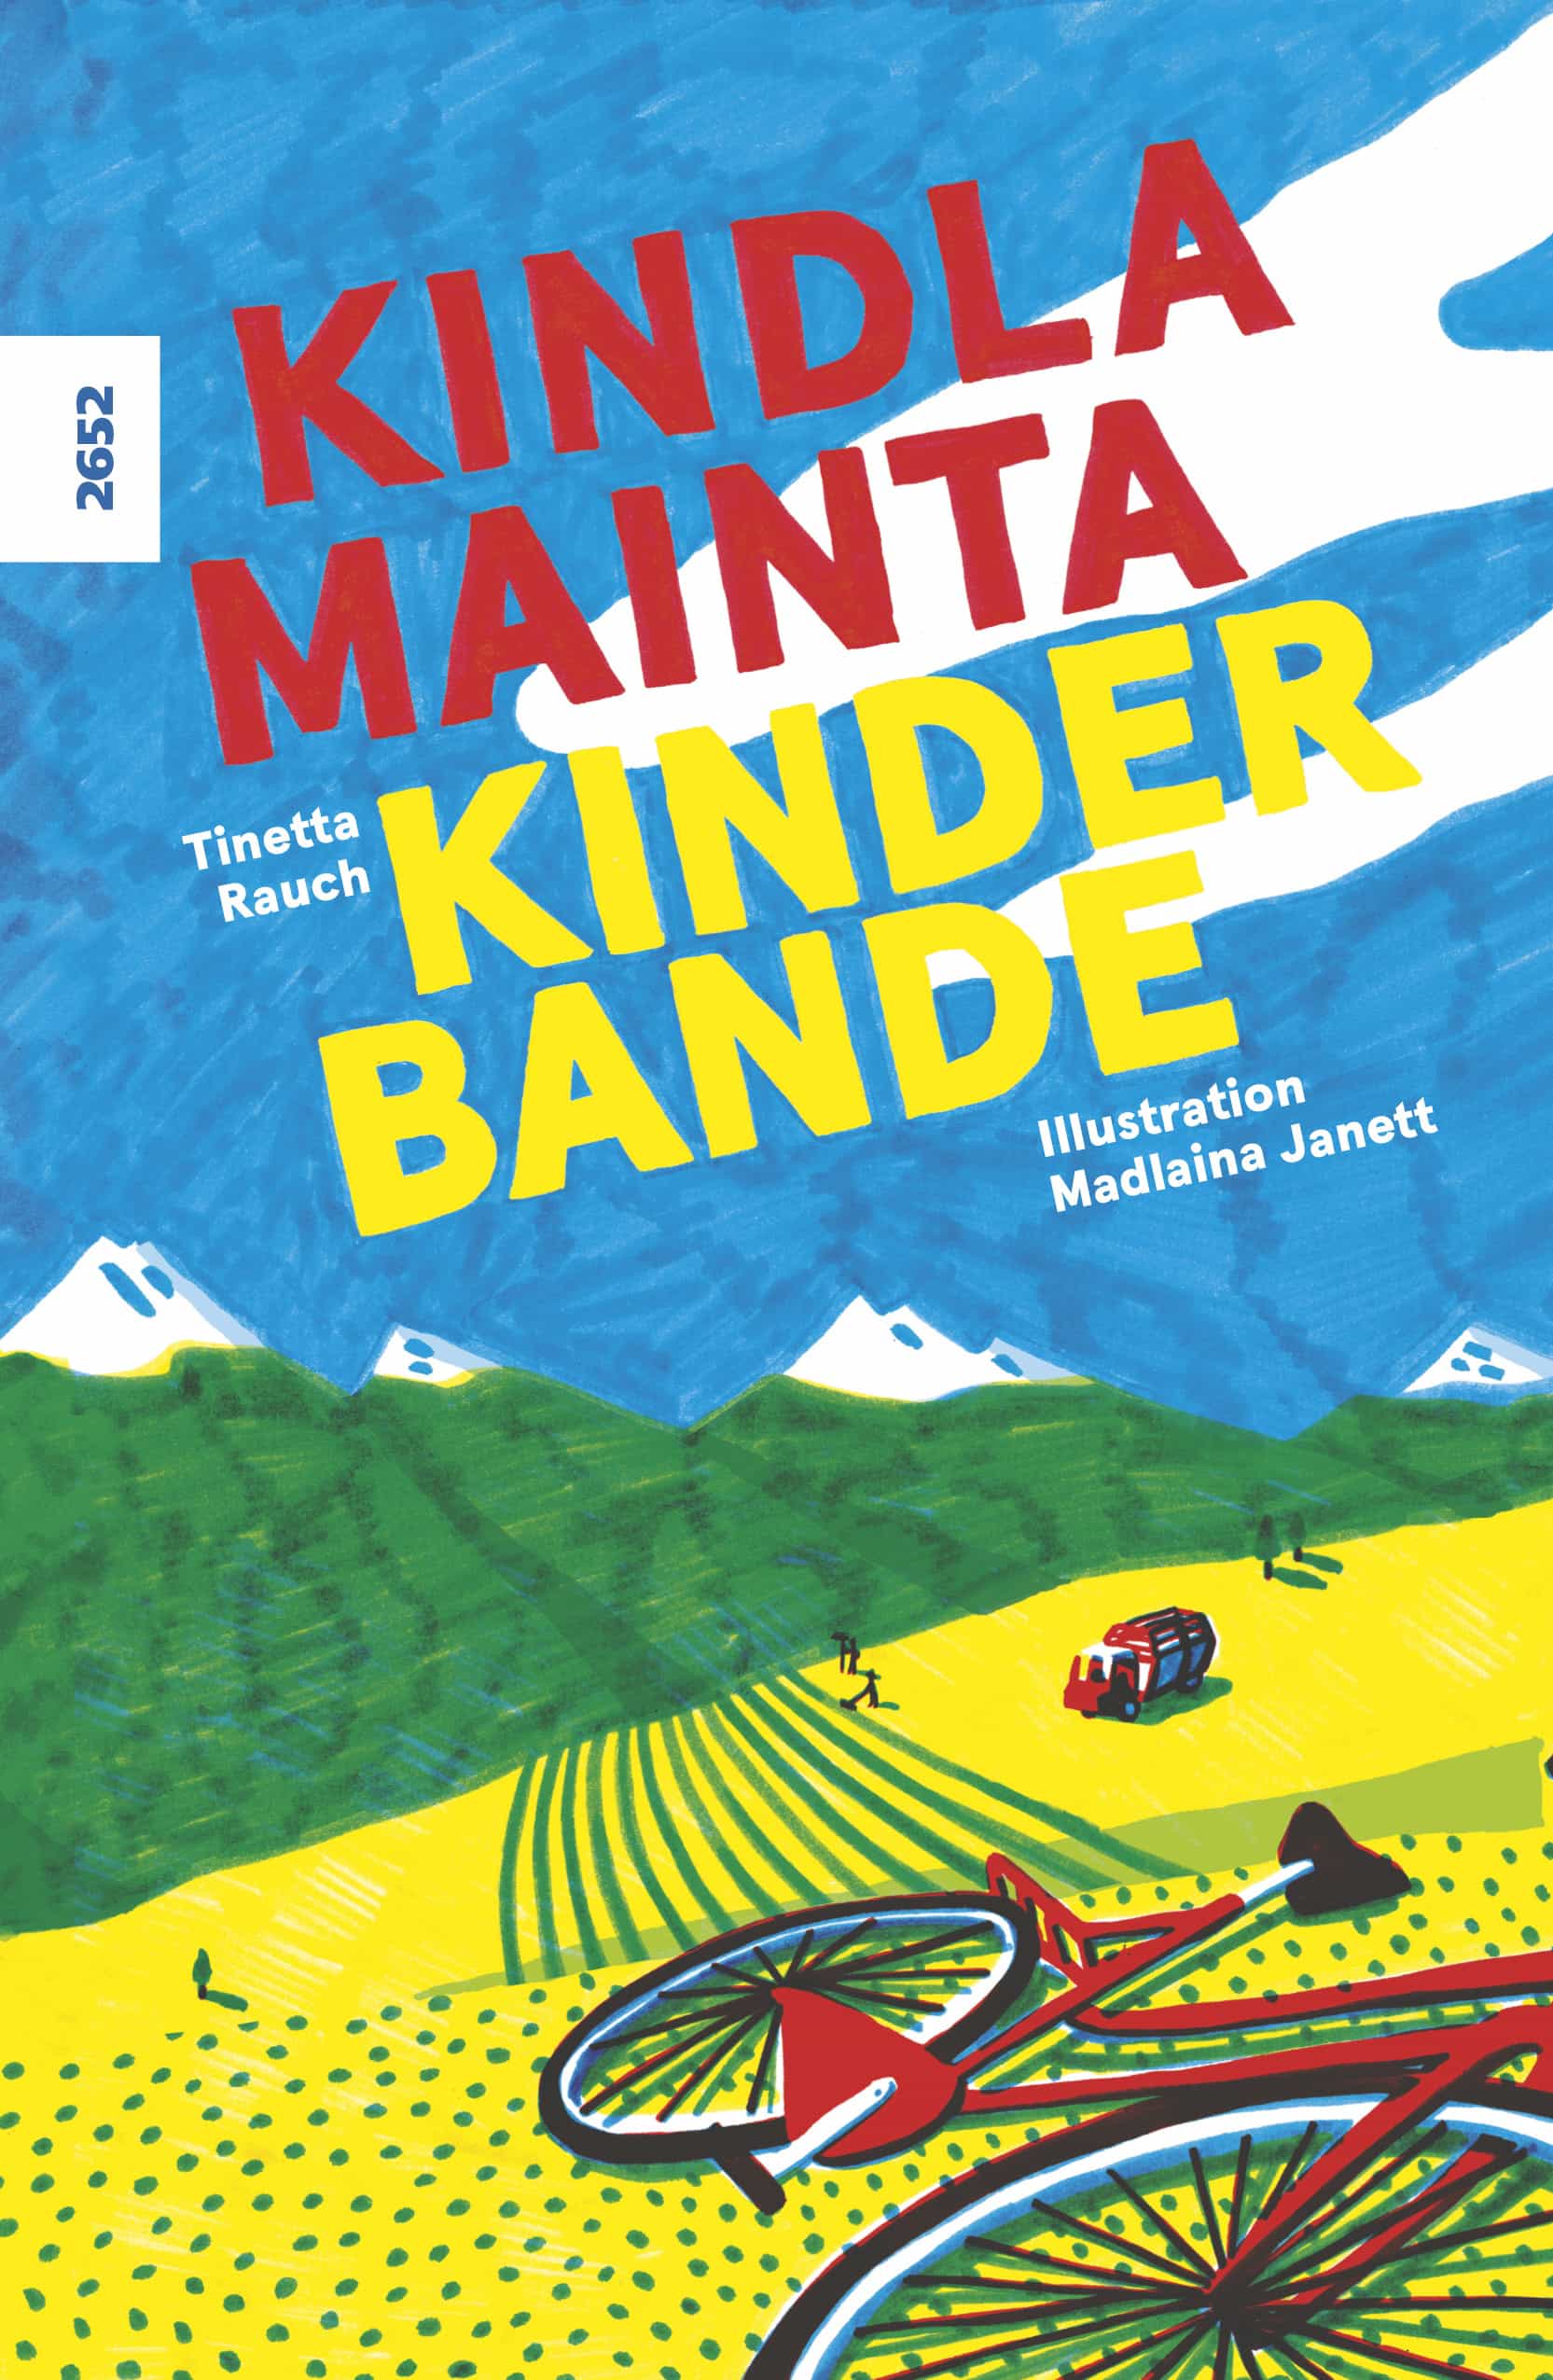 Kindlamainta / Kinderbande (Vallader/Deutsch), ein zweisprachiges Buch von Tinetta Rauch, Illustration Madlaina Janett, SJW